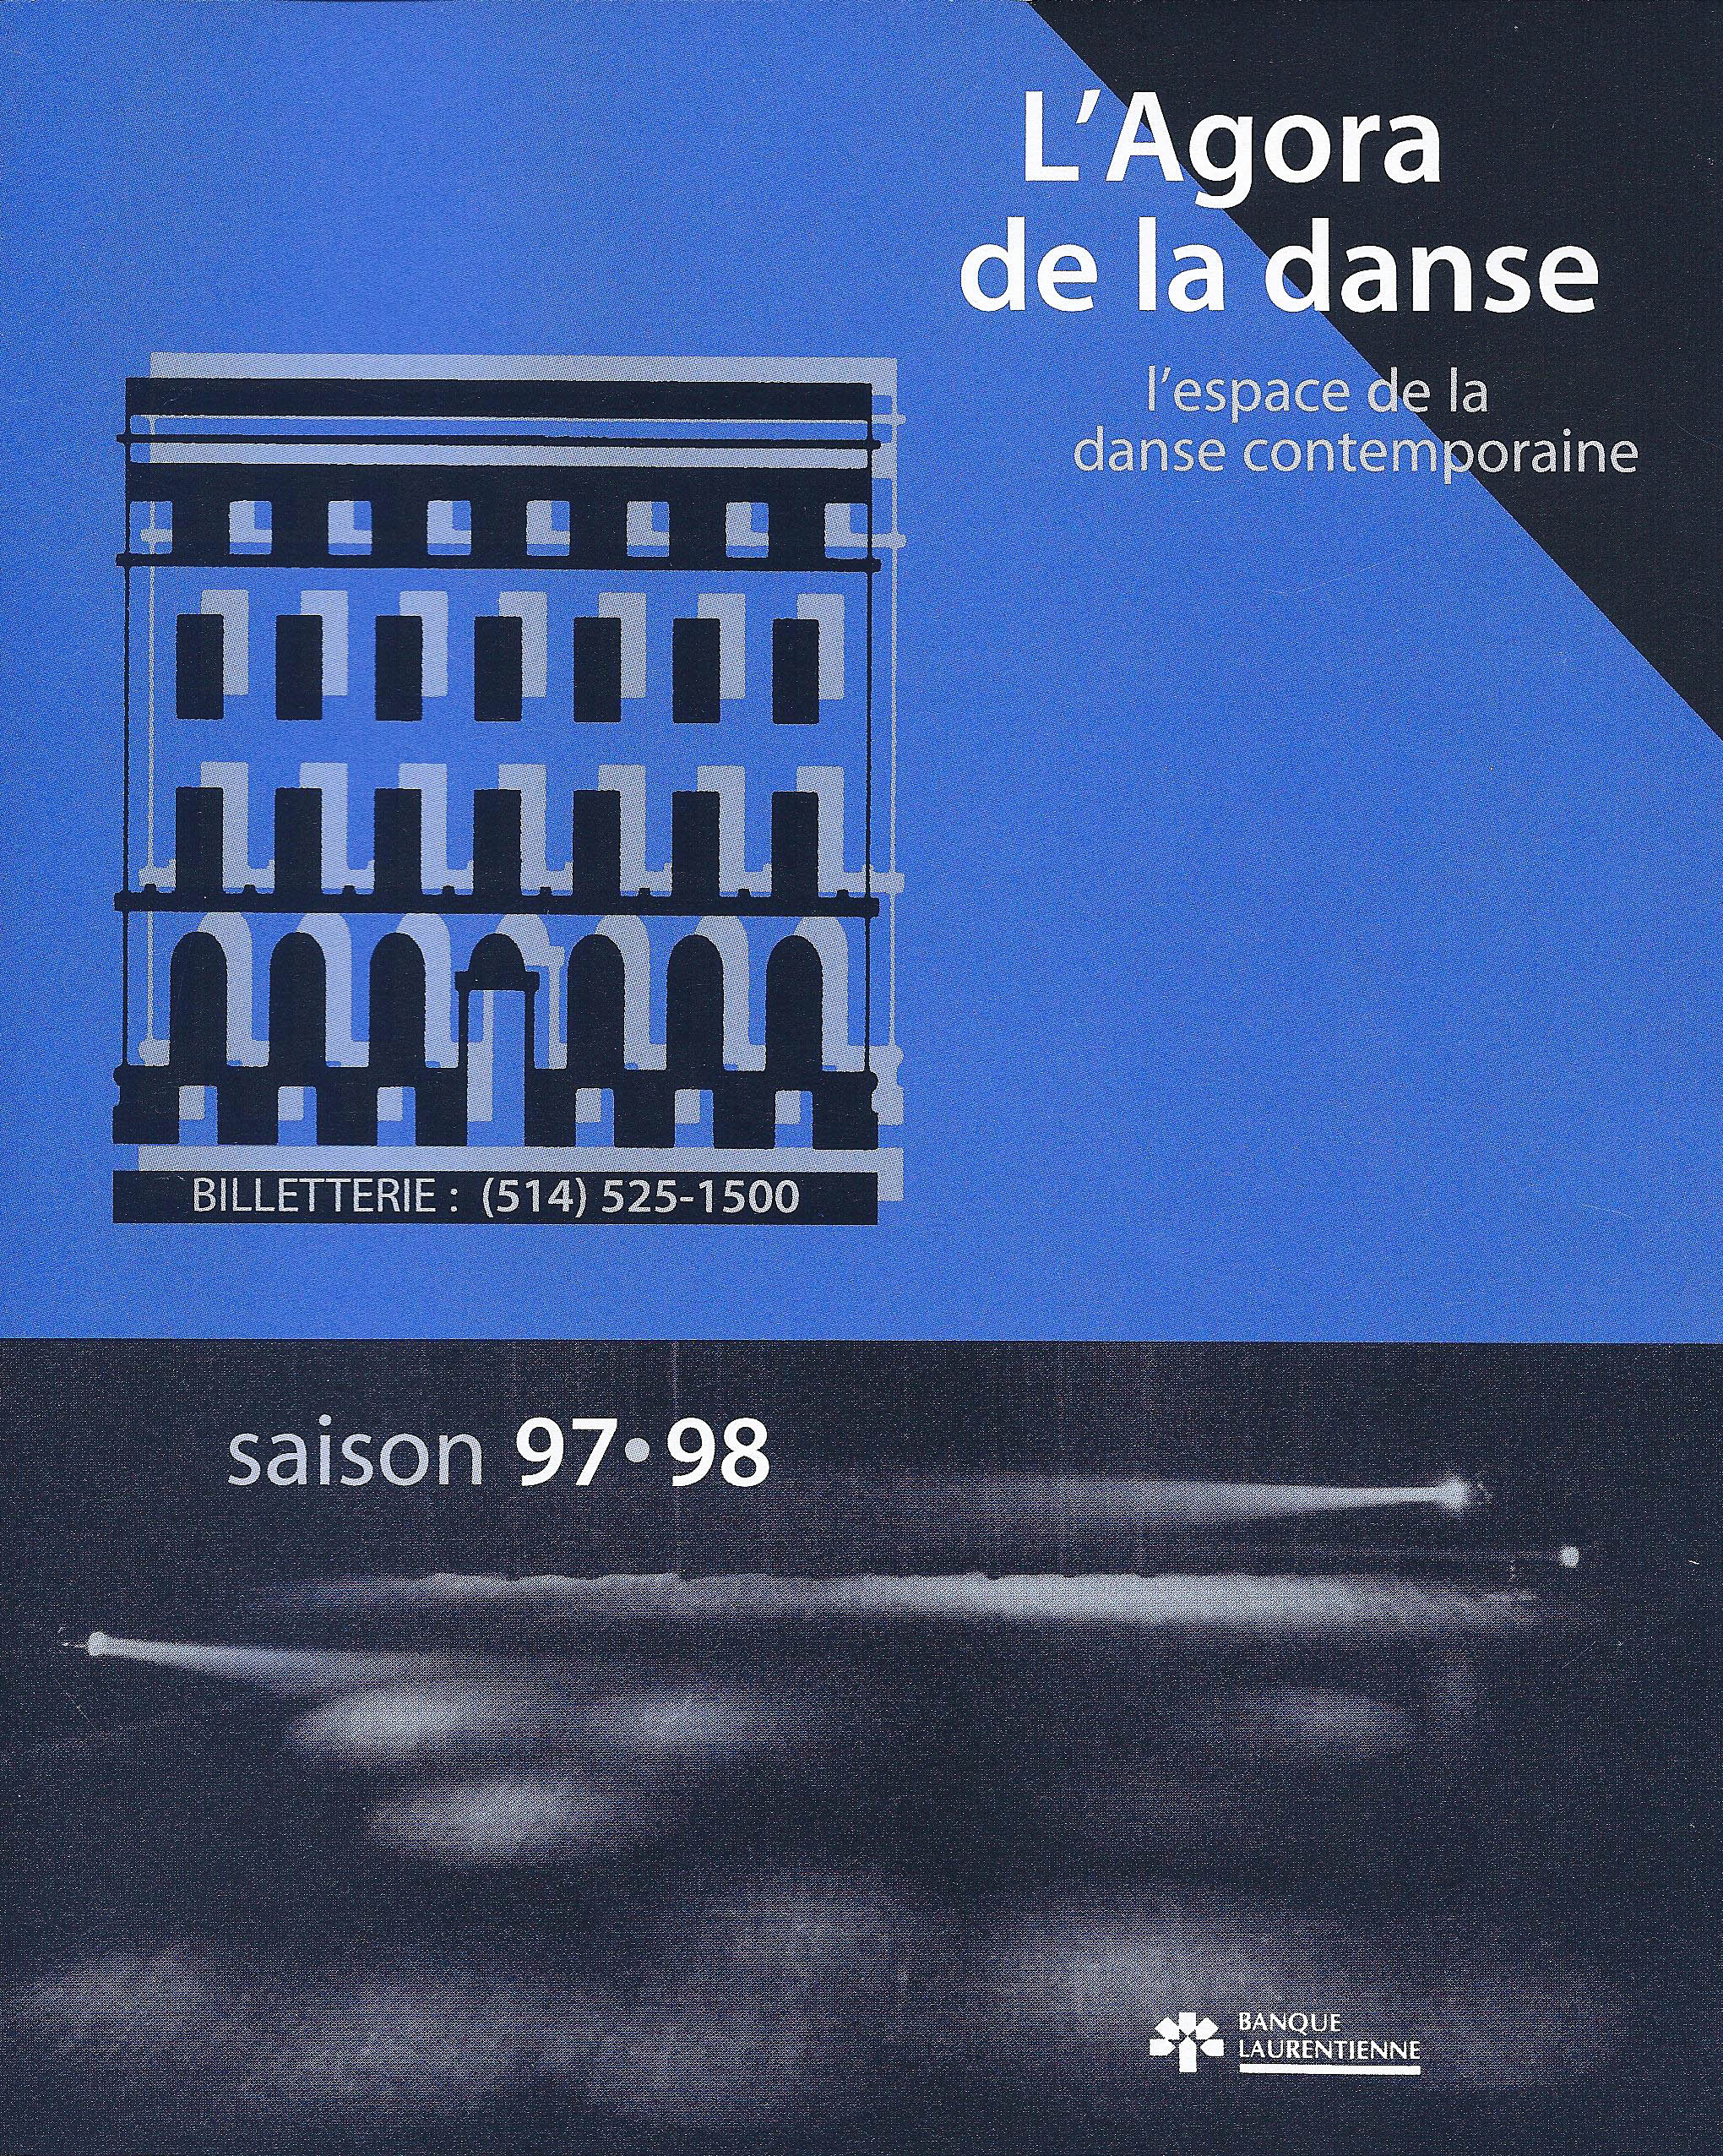 programme automne + hiver 1997- 1998 Agora de la danse